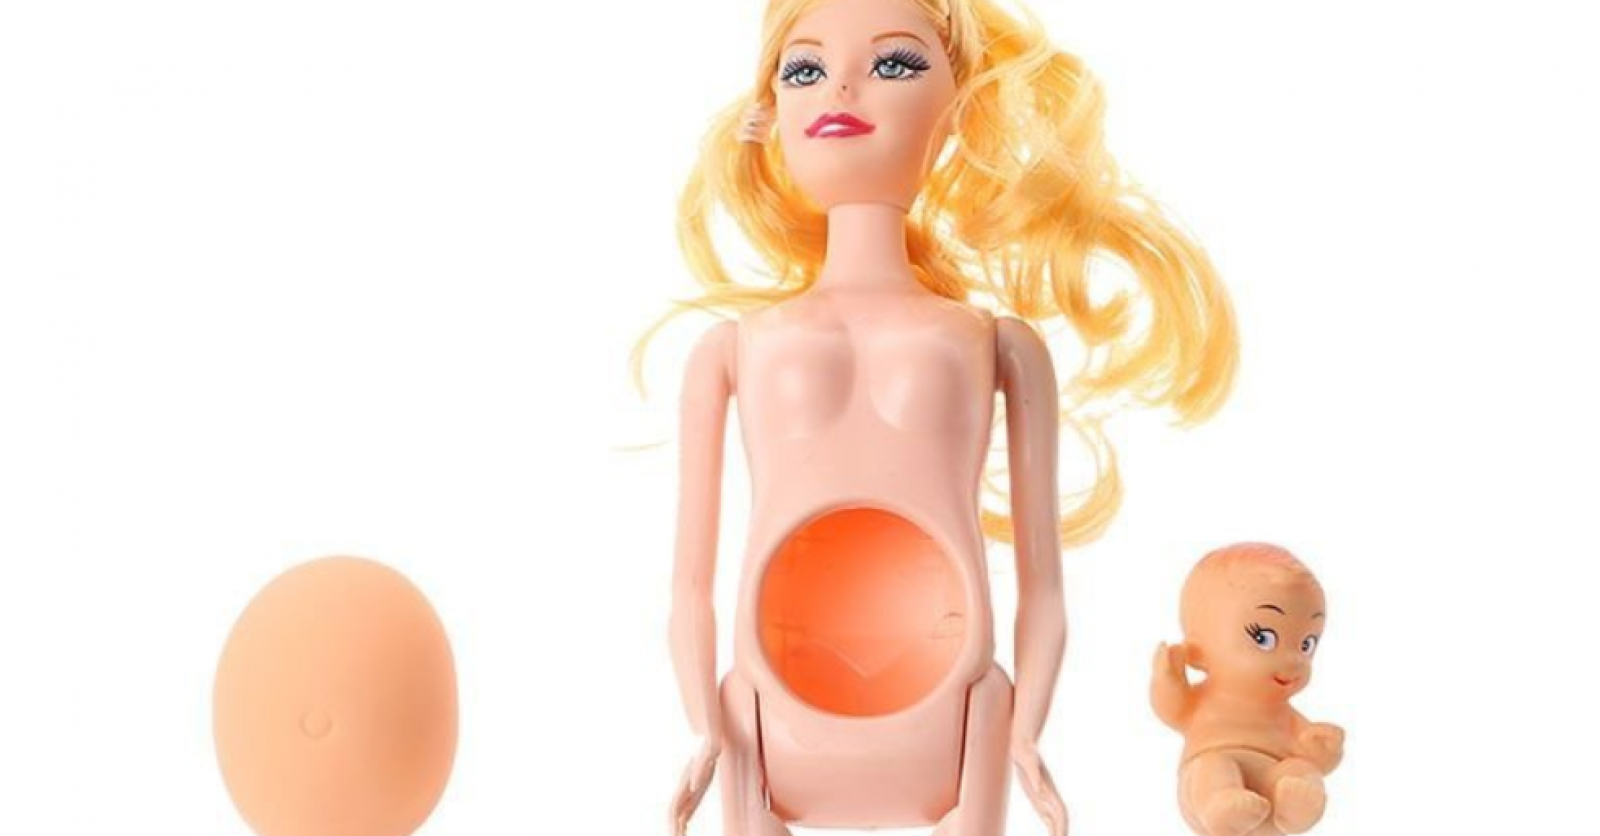 La Barbie enceinte fait polémique